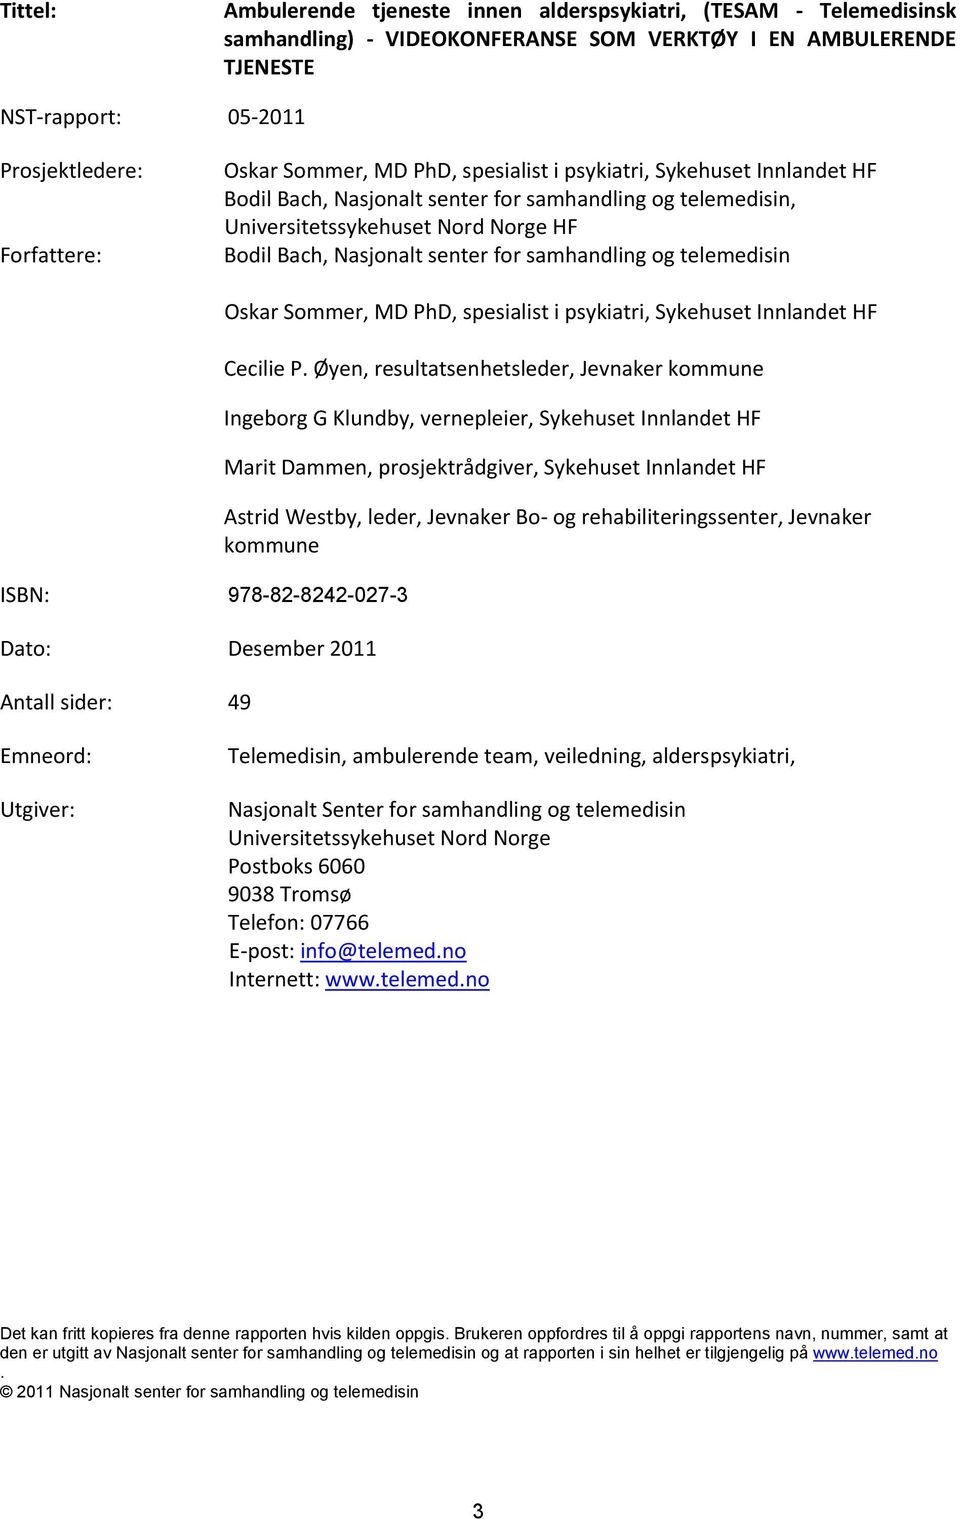 samhandling og telemedisin ISBN: 978-82-8242-027-3 Dato: Desember 2011 Antall sider: 49 Oskar Sommer, MD PhD, spesialist i psykiatri, Sykehuset Innlandet HF Cecilie P.